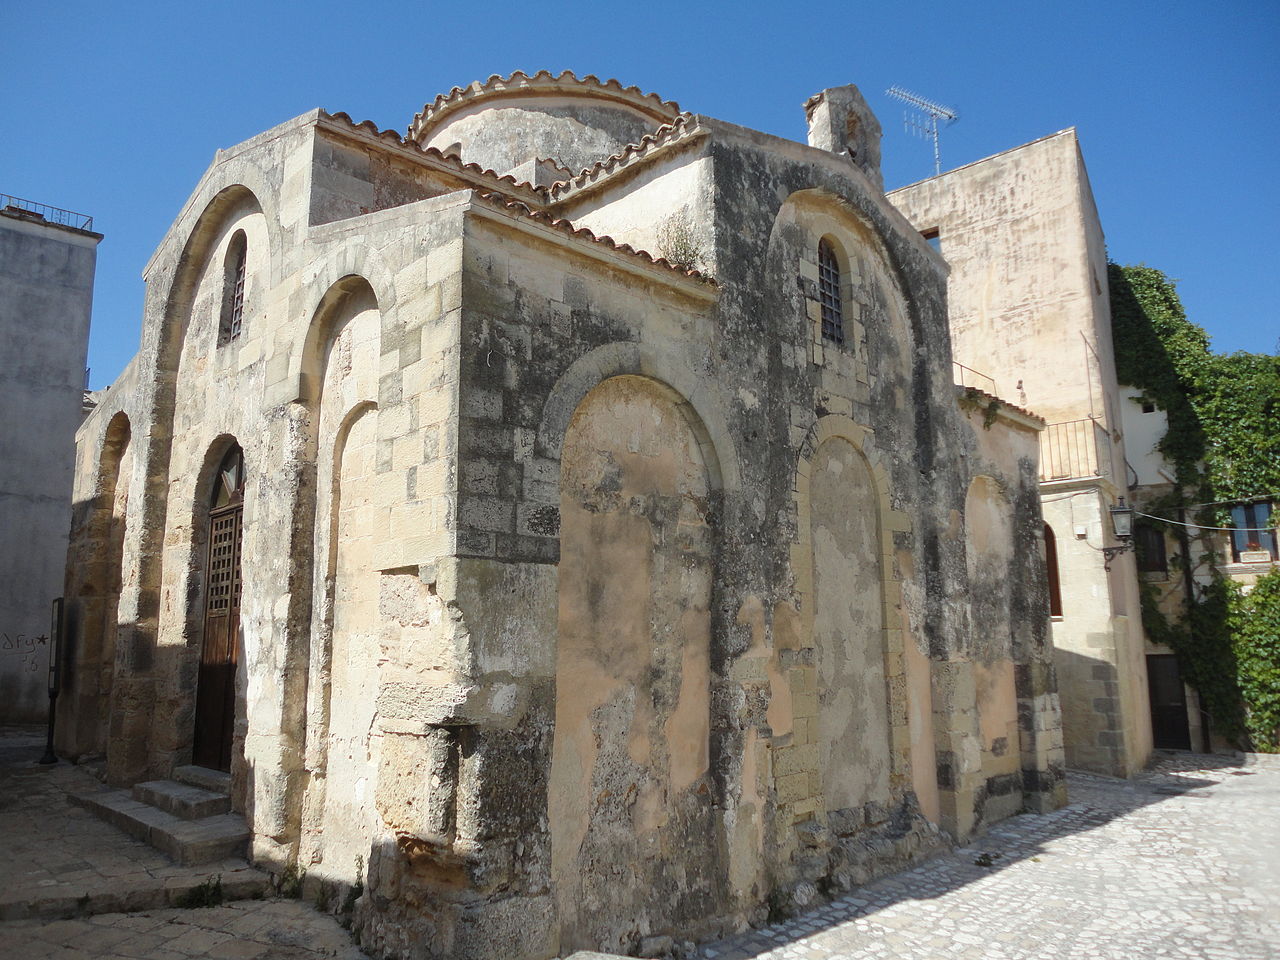 Lupiae, Chiesa di San Pietro di Otranto - Lecce,  1 February 2012